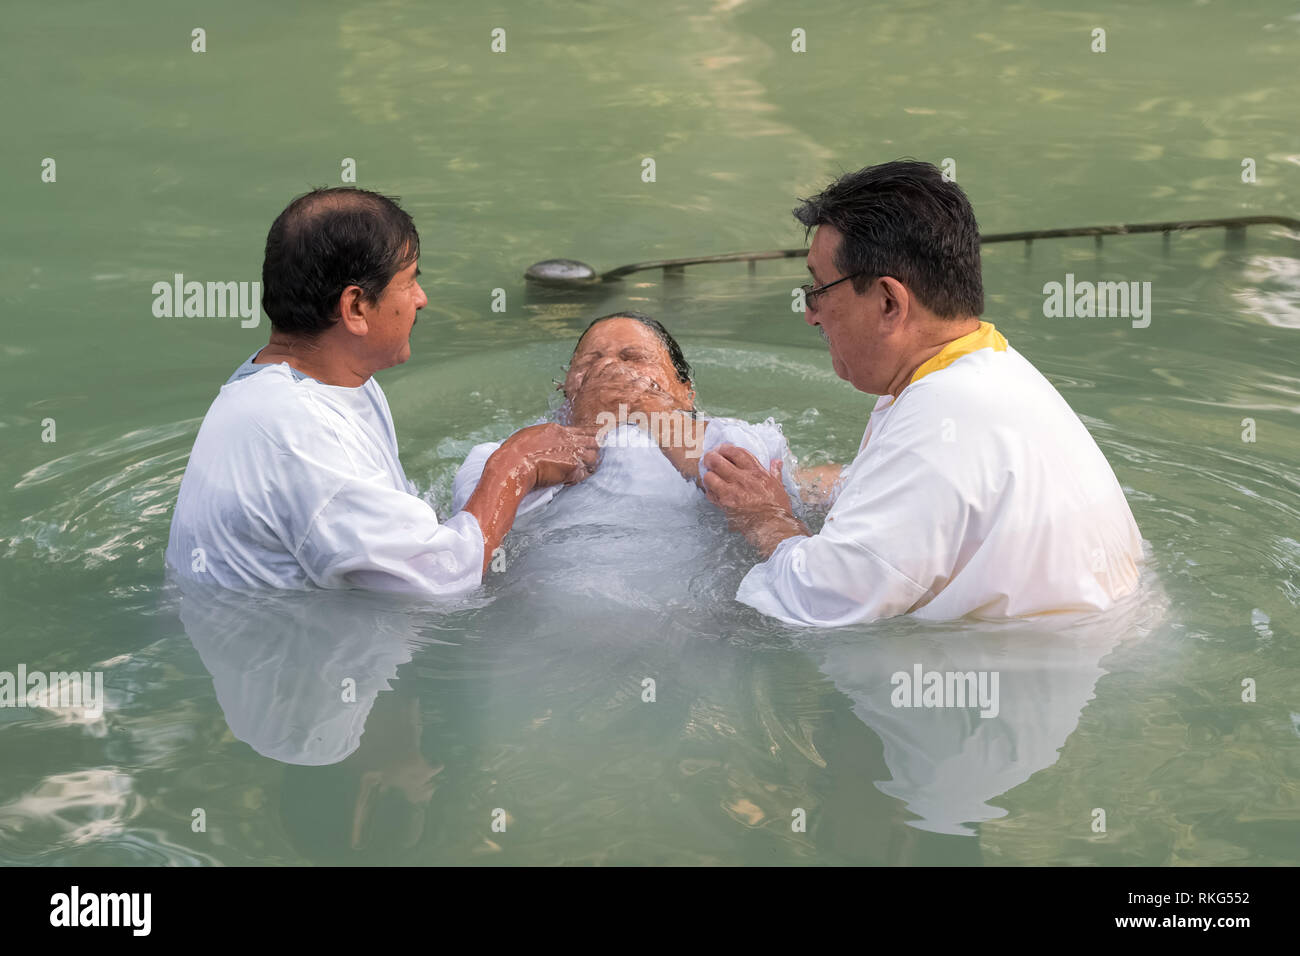 Yardenit, Israel - 29 de diciembre de 2012: la mujer no identificada peregrino cristiano obtiene bautizado en el río Jordán en el norte de Israel (sitio bautismal Yardenit). Foto de stock